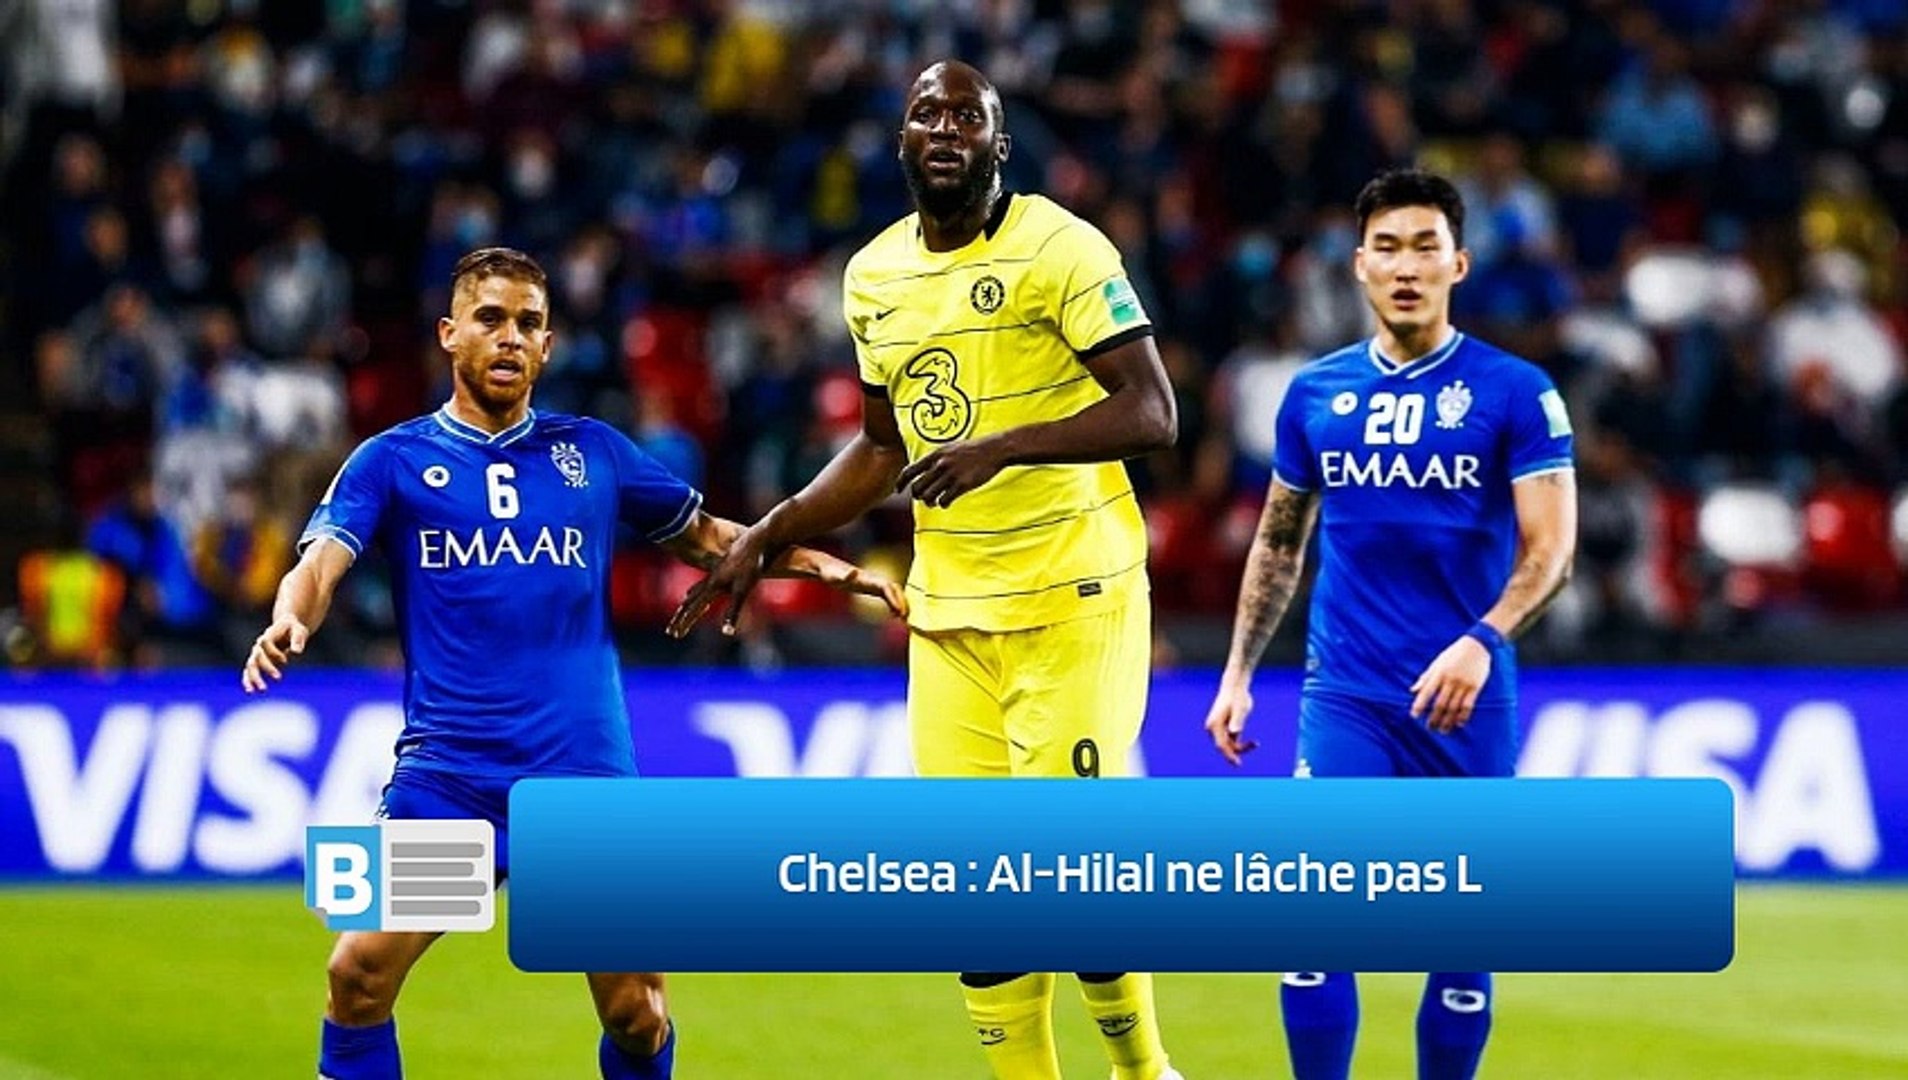 Chelsea : Al-Hilal ne lâche pas L - Vidéo Dailymotion